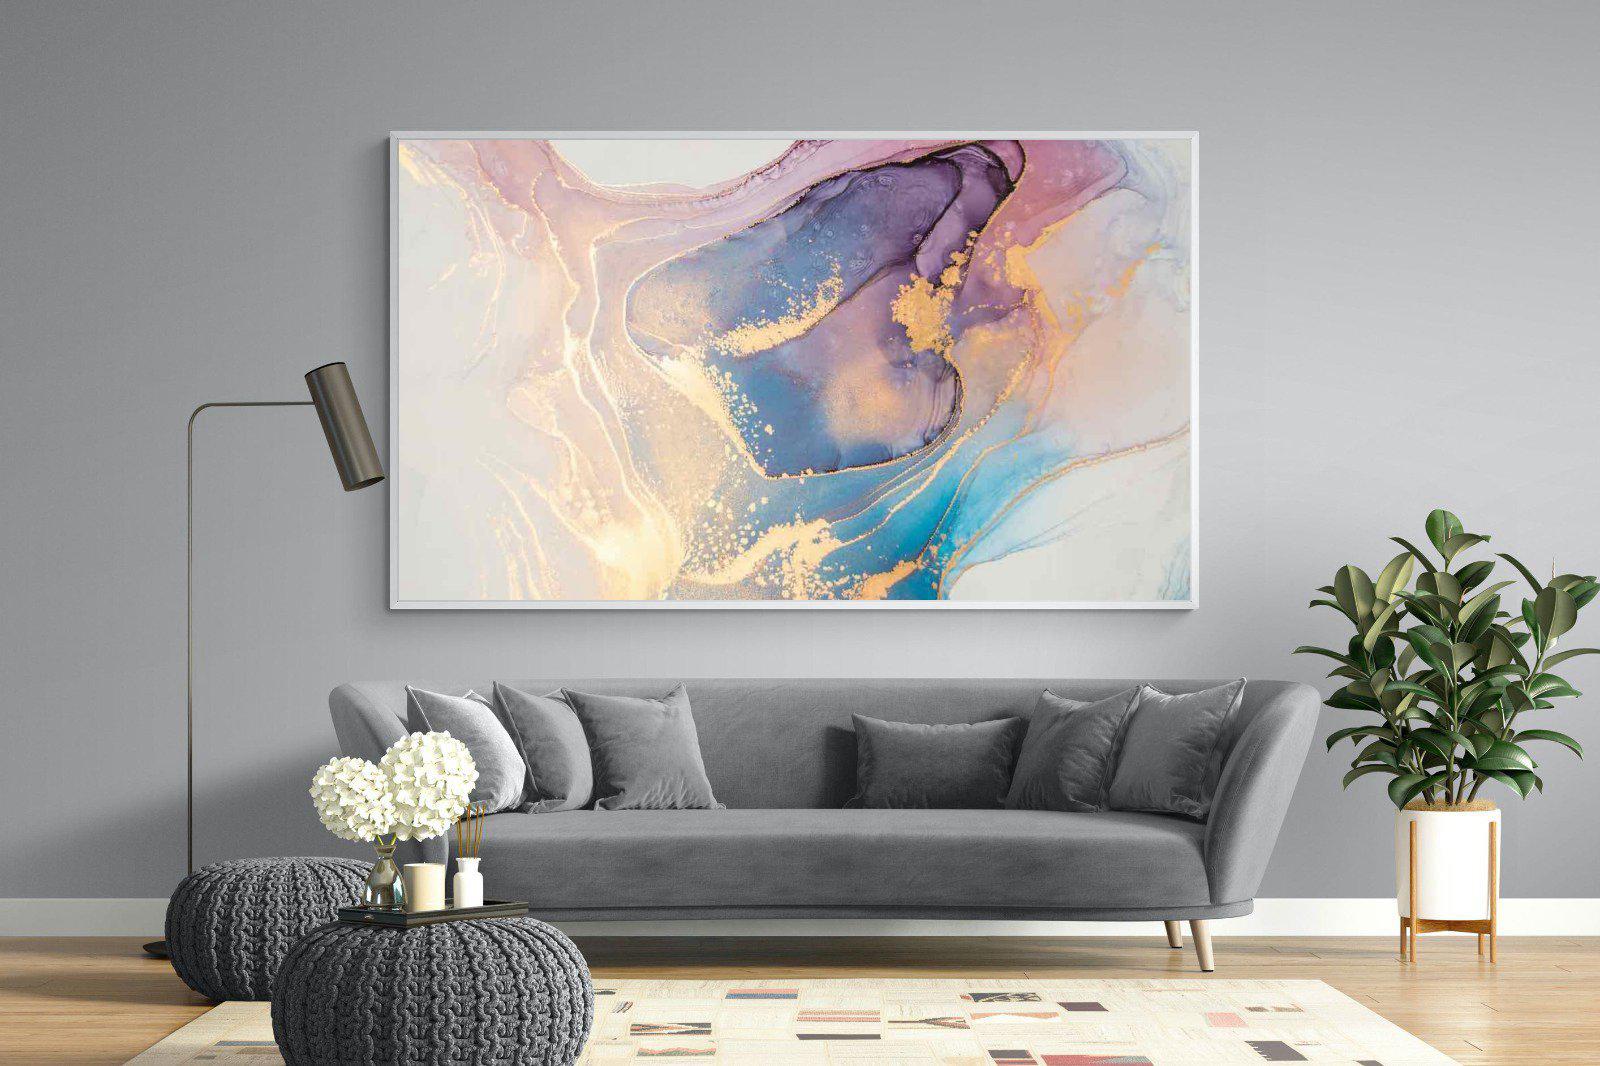 Blushing-Wall_Art-220 x 130cm-Mounted Canvas-White-Pixalot